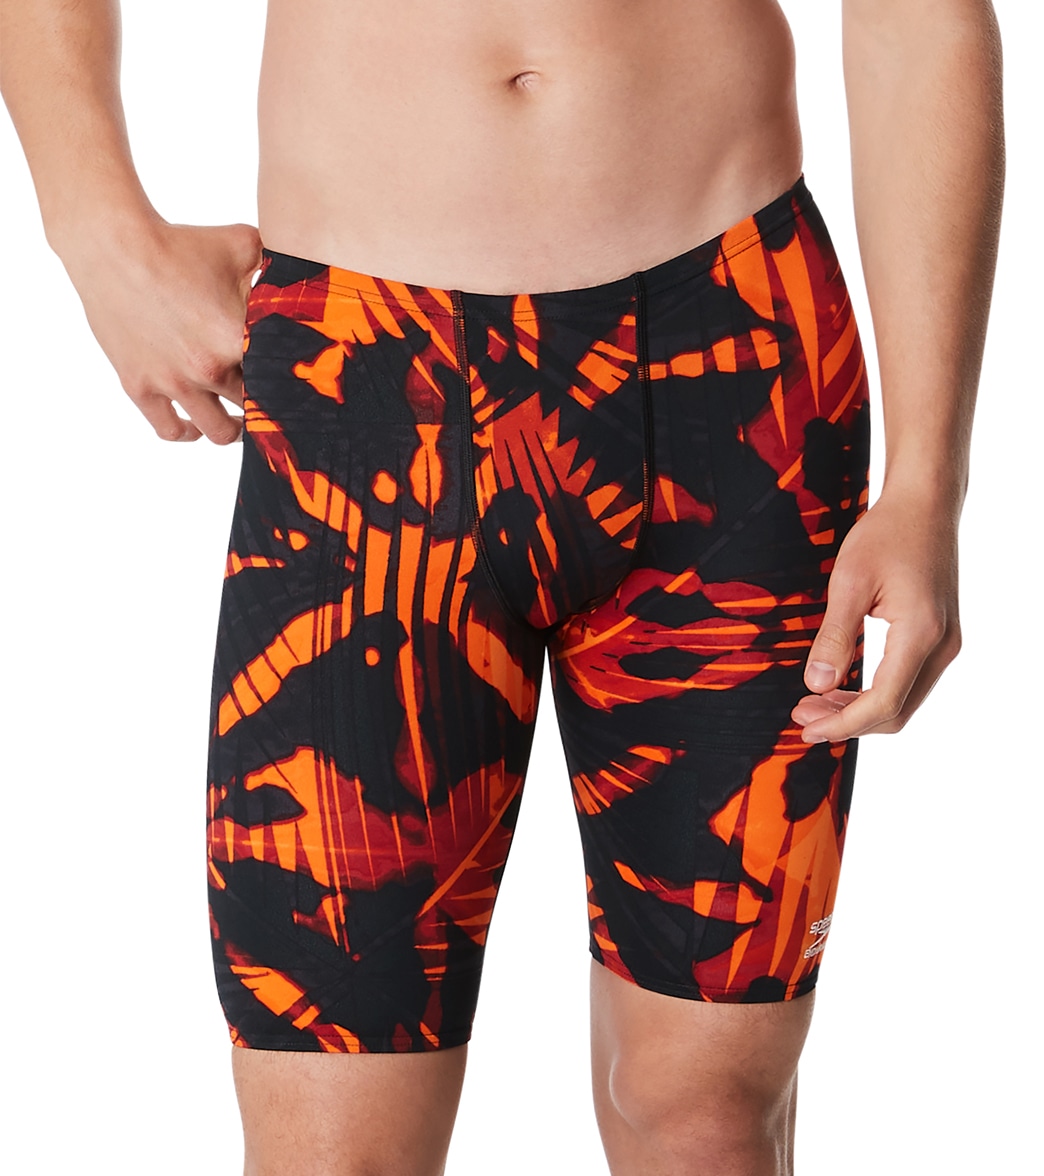 Speedo Men's Reflected Jammer Swimsuit - Orange 24 - Swimoutlet.com